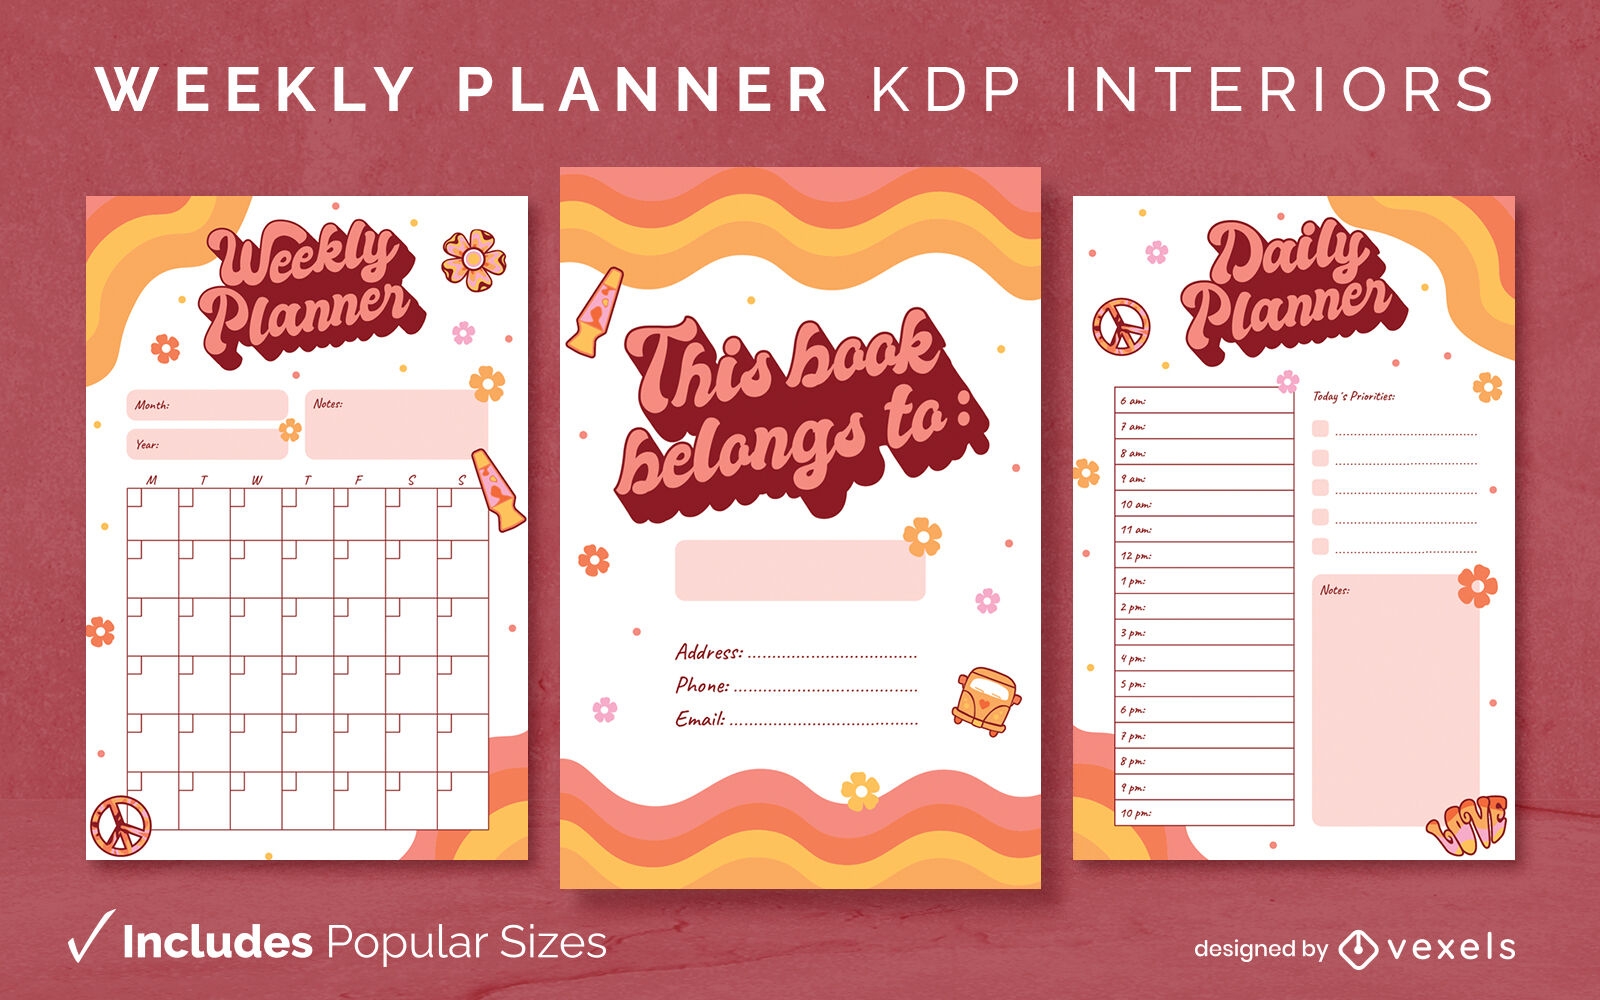 Retro hippie planner design template KDP